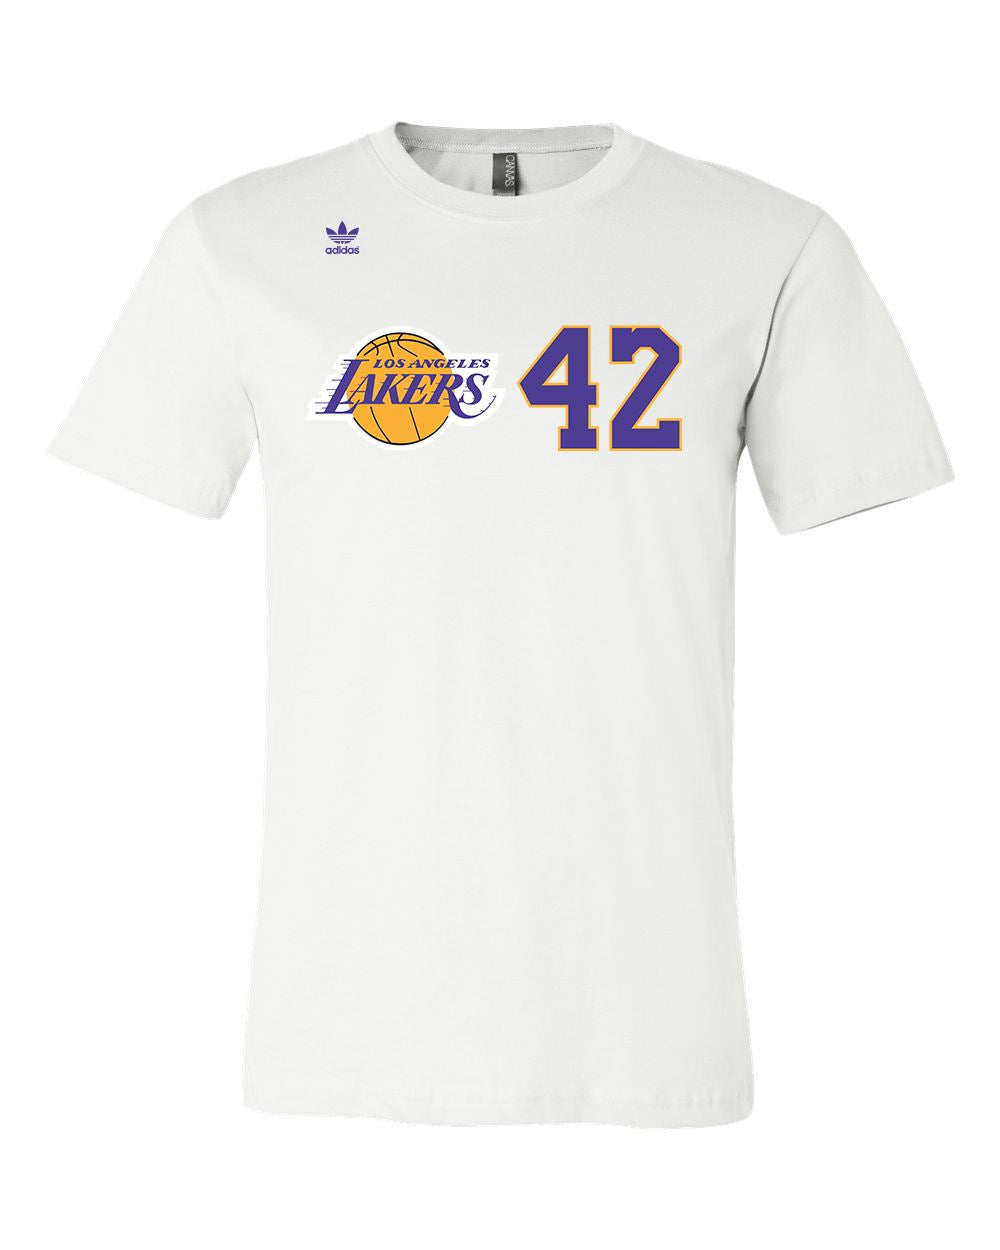 Los Angeles Lakers Fan Shop